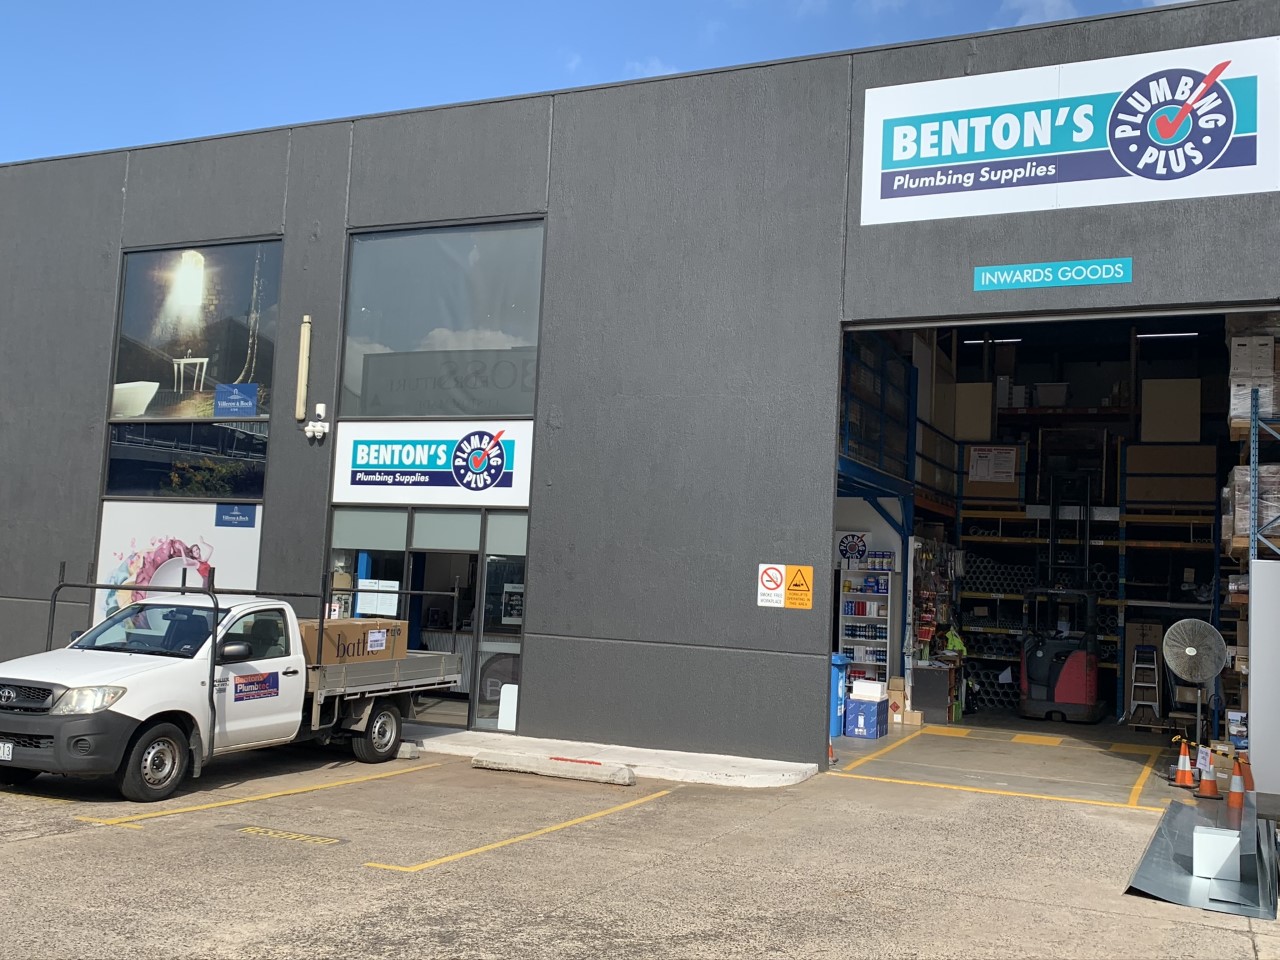 Benton's South Melbourne